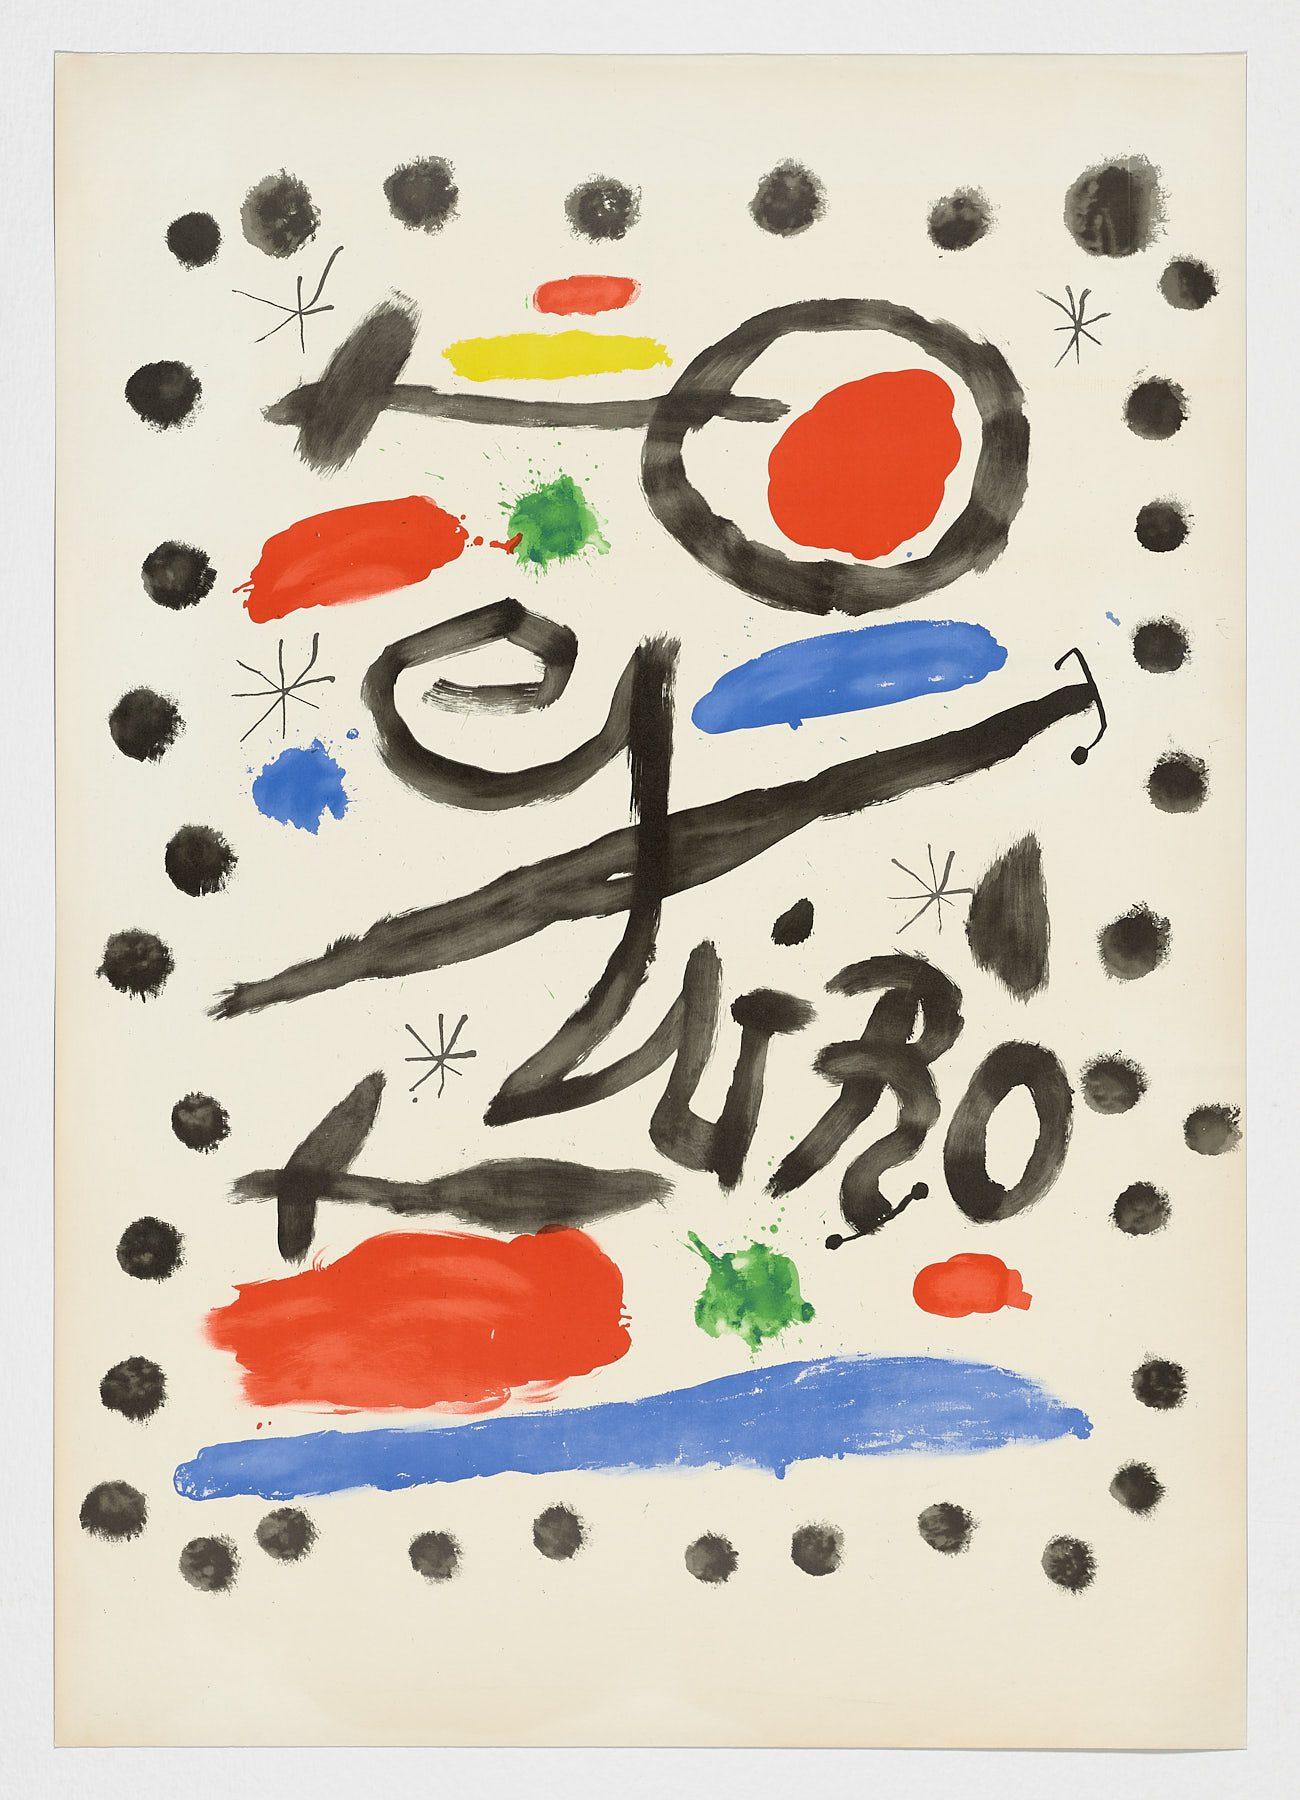 Abstract Print Joan Miró - Artiste espagnol 1964 lithographie originale en édition limitée non signée, n56